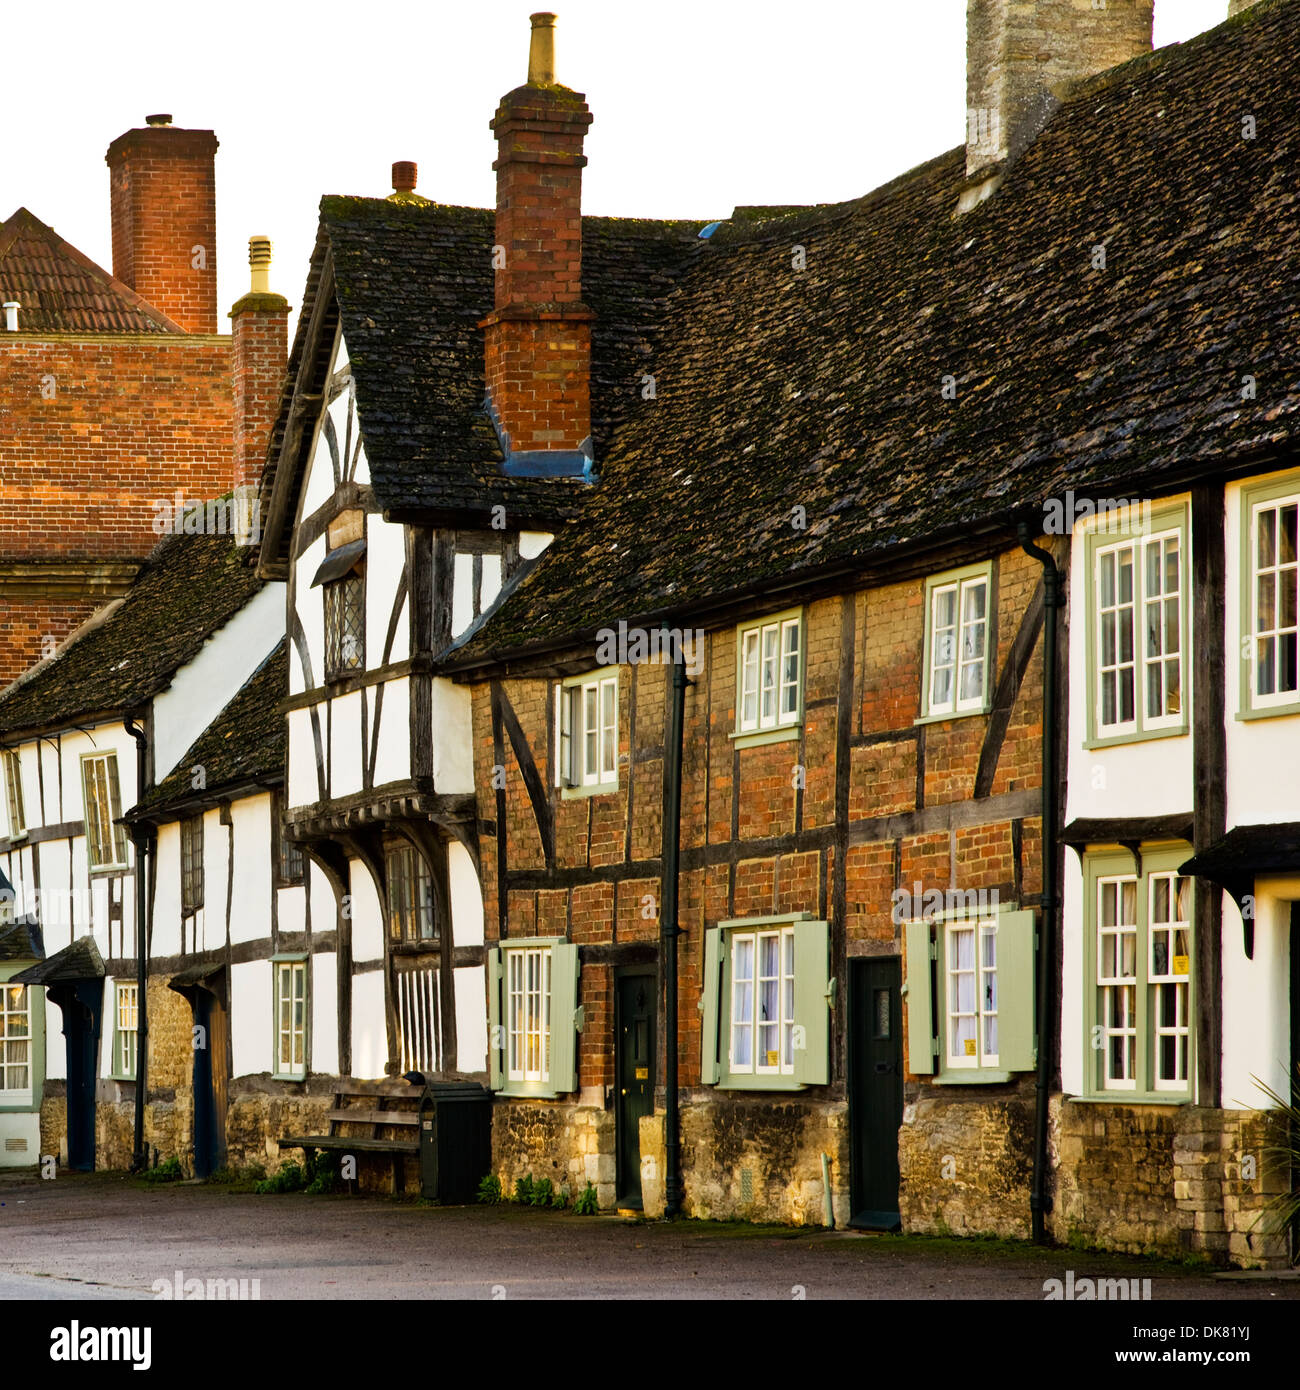 Casas de entramado de madera del medieval, que perteneció a los comerciantes de lana, en el bonito pueblo histórico de Lacock, en Wiltshire. Foto de stock